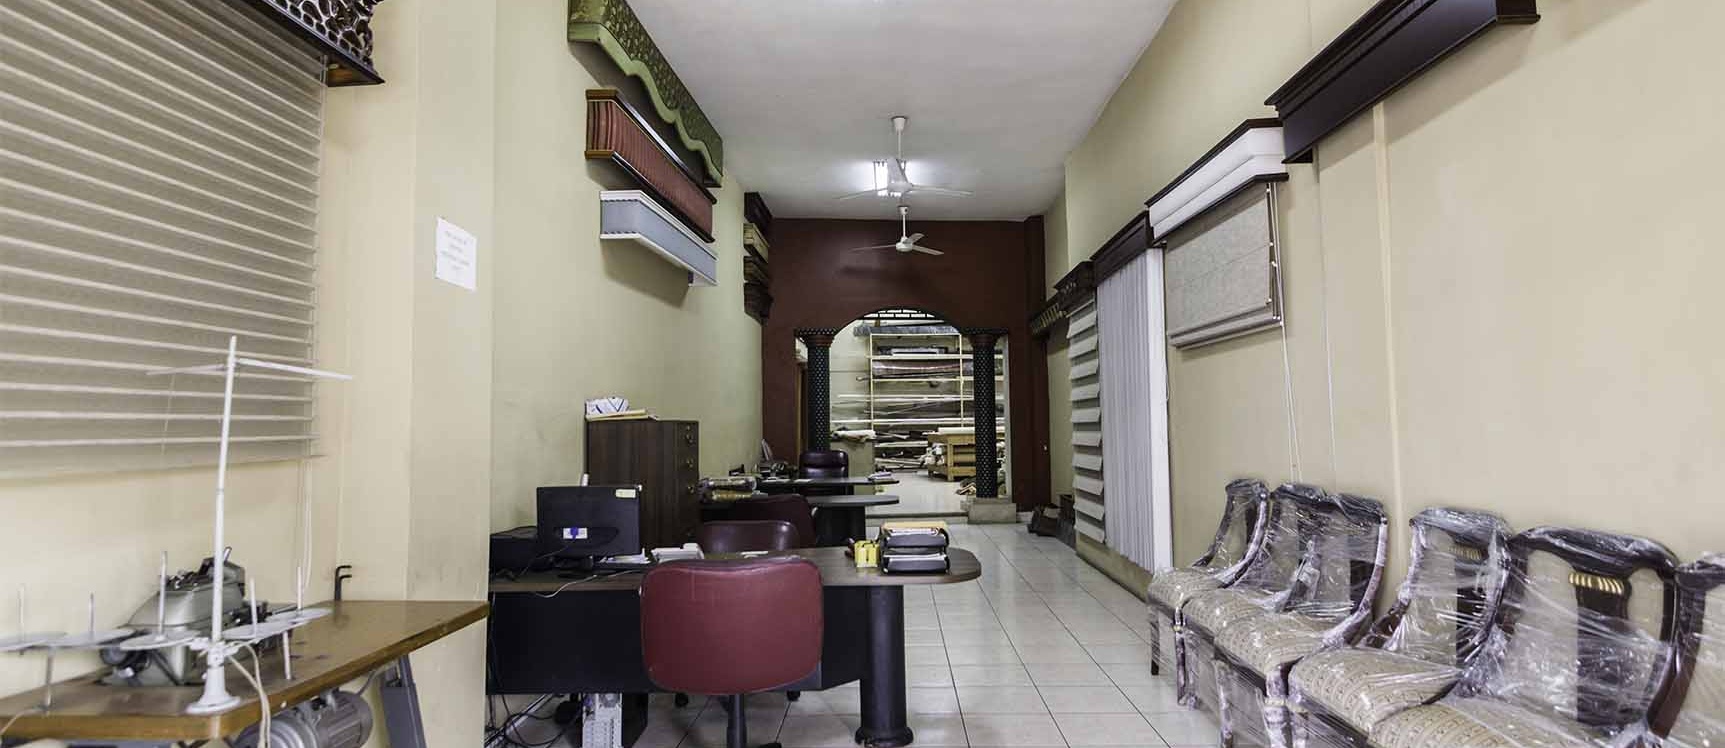 GeoBienes - Local comercial en venta en Centro de Guayaquil - Plusvalia Guayaquil Casas de venta y alquiler Inmobiliaria Ecuador